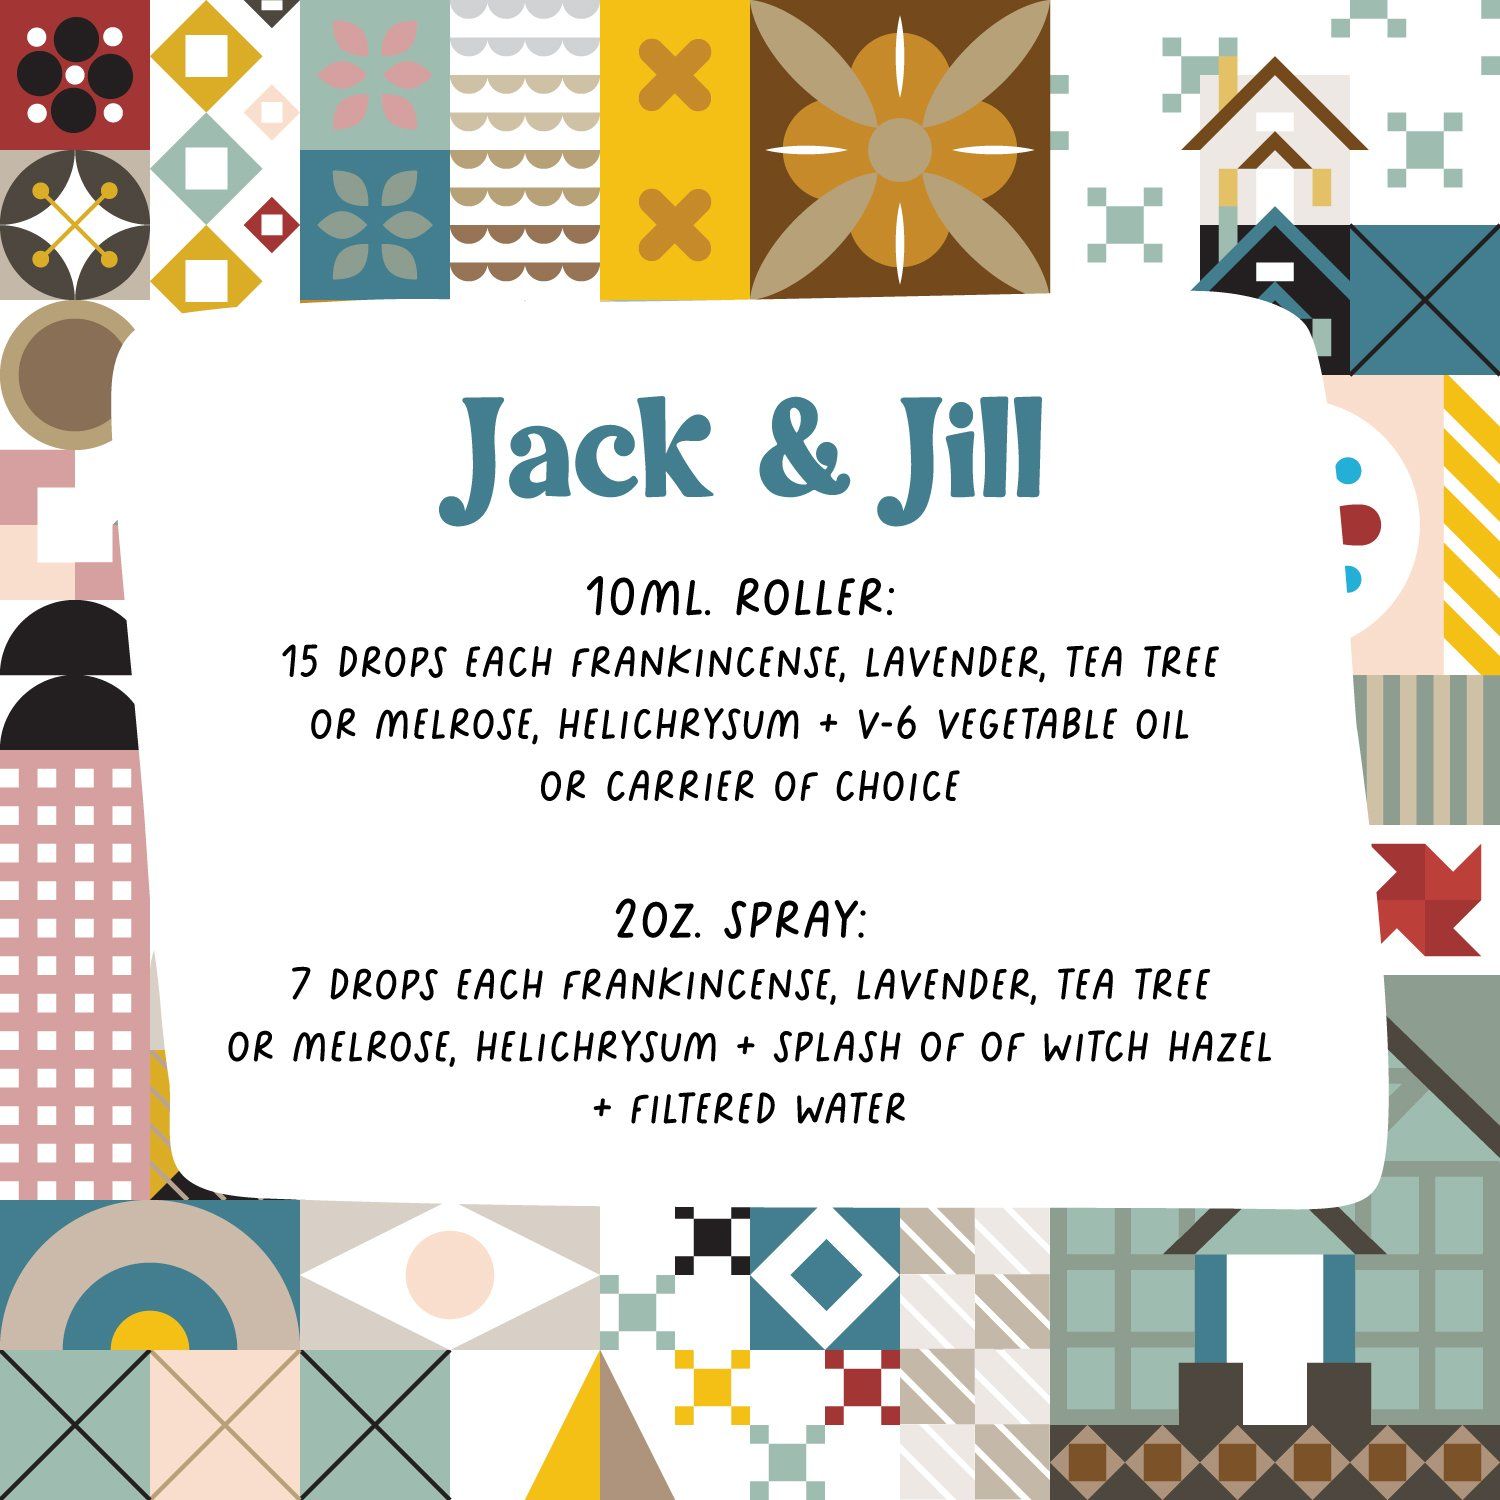 Jack & Jill Rollers & Sprays